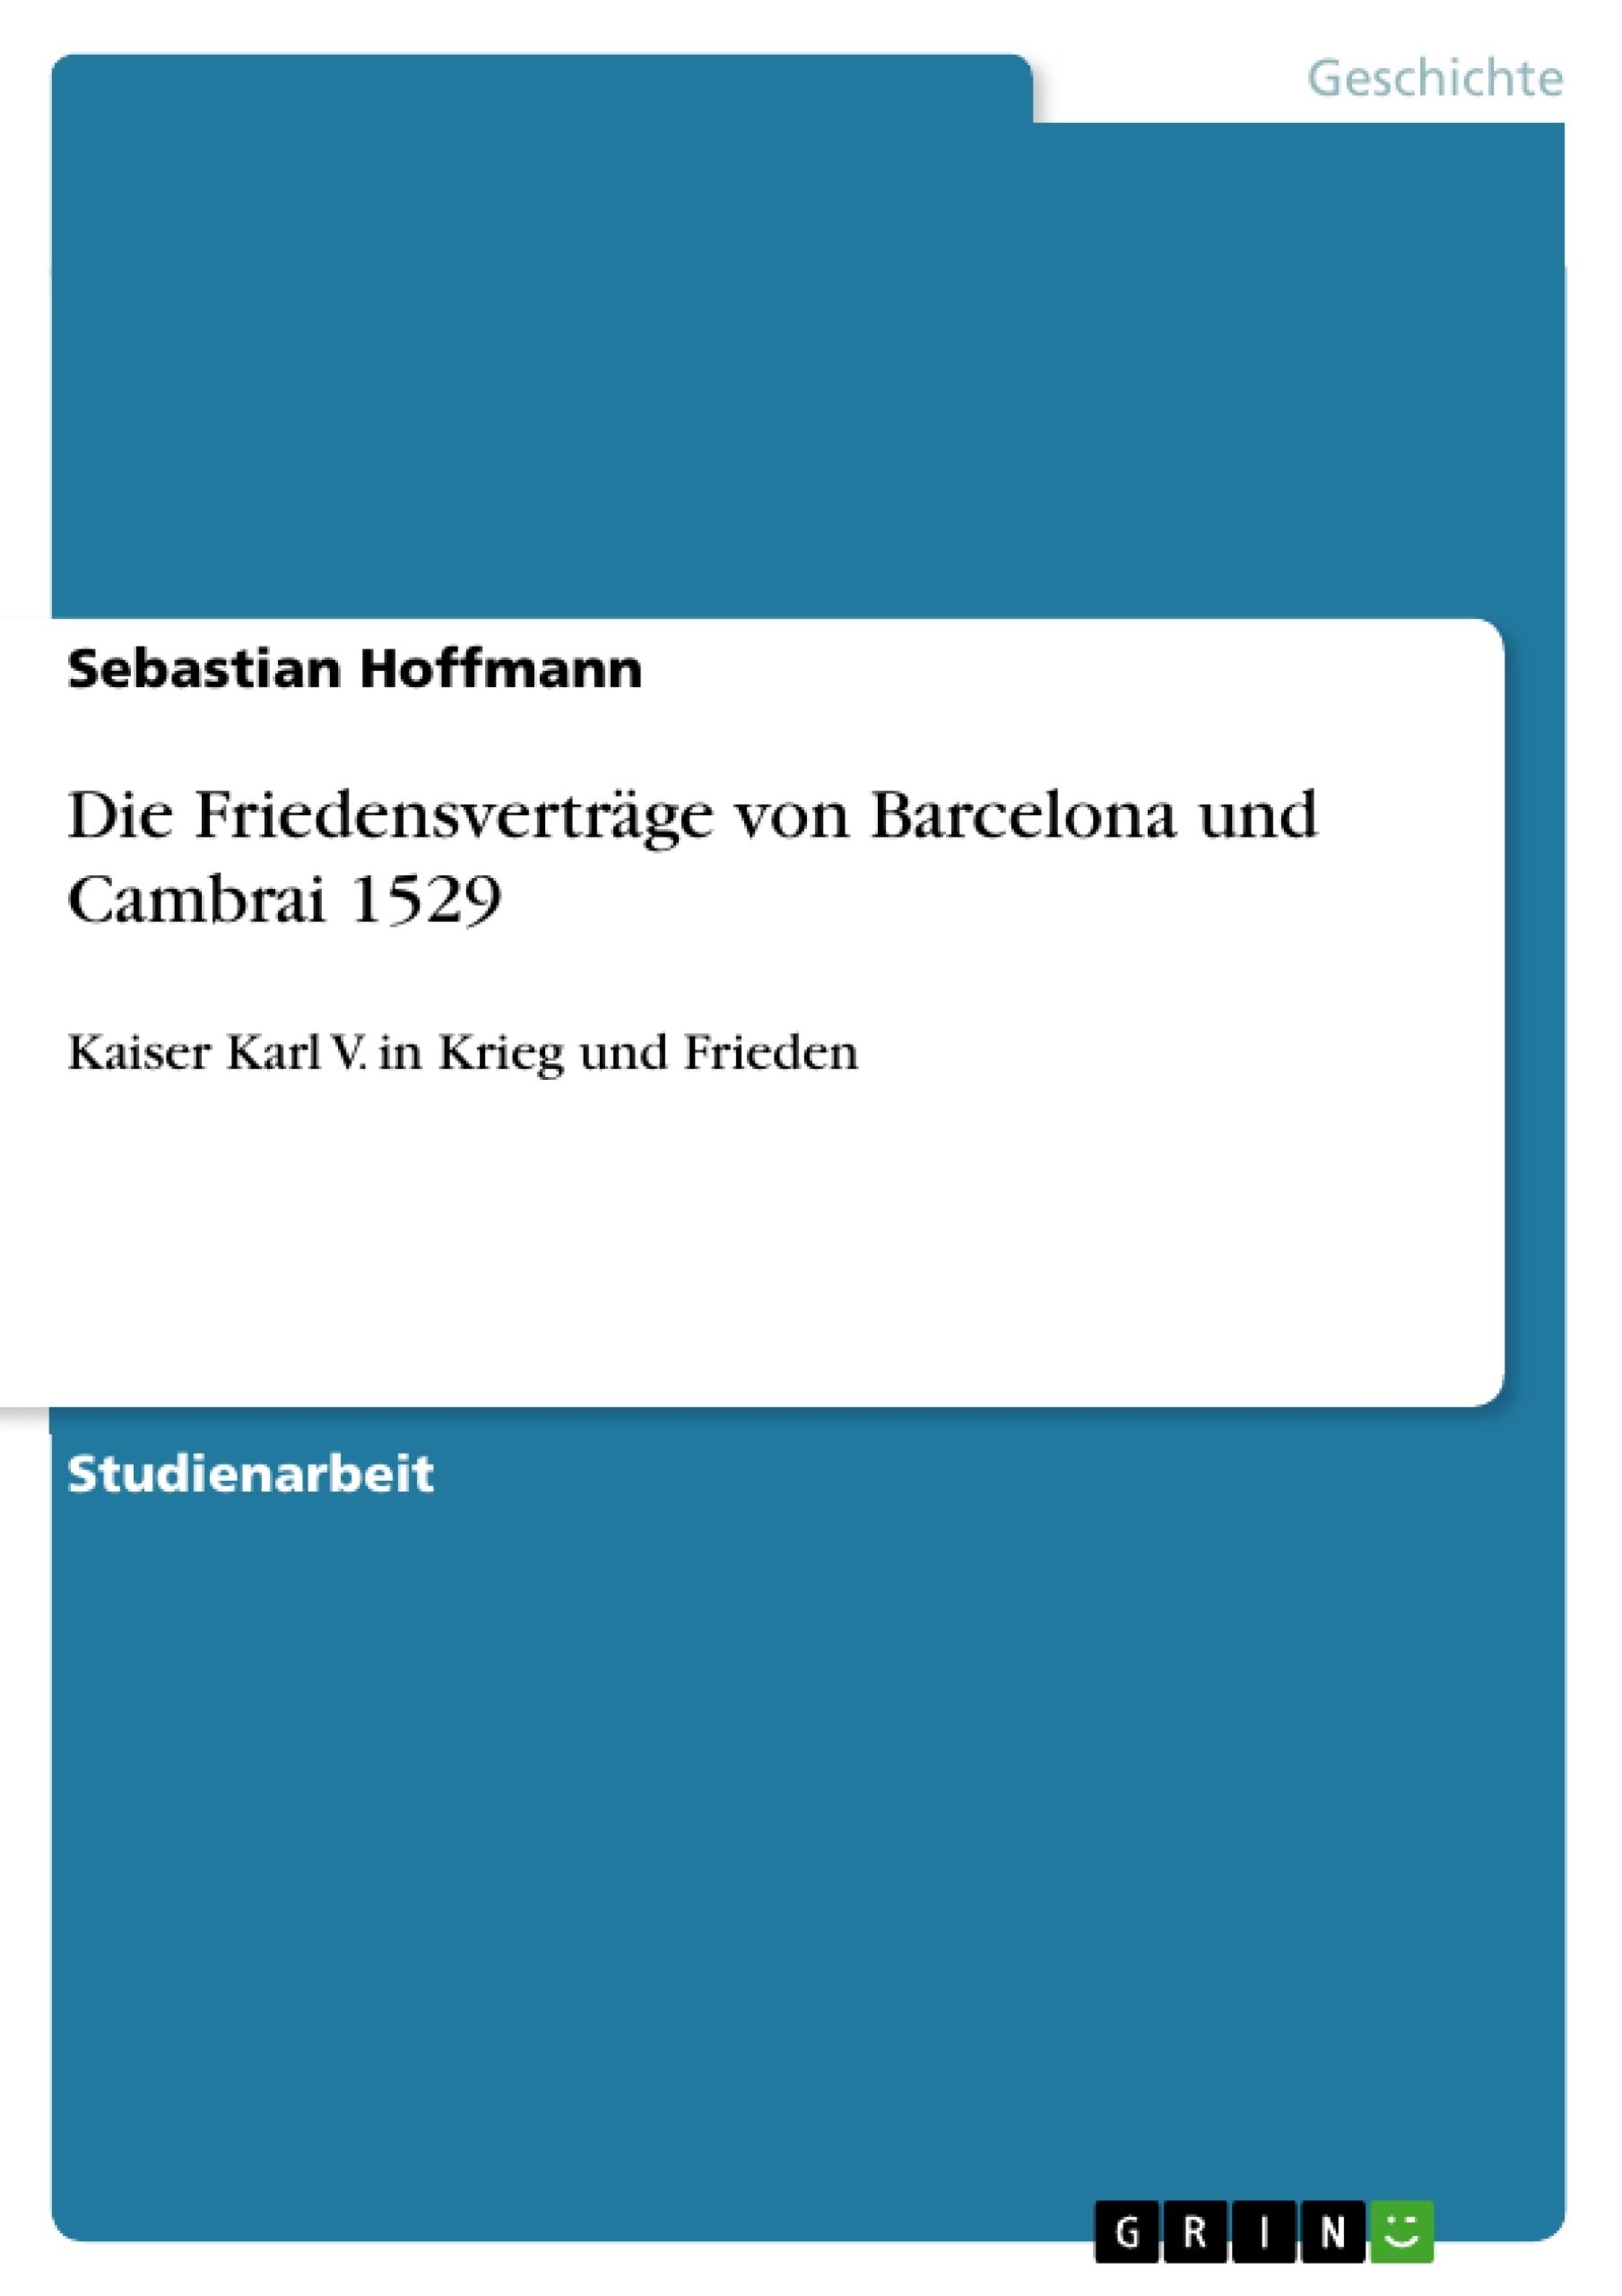 Titre: Die Friedensverträge von Barcelona und Cambrai 1529